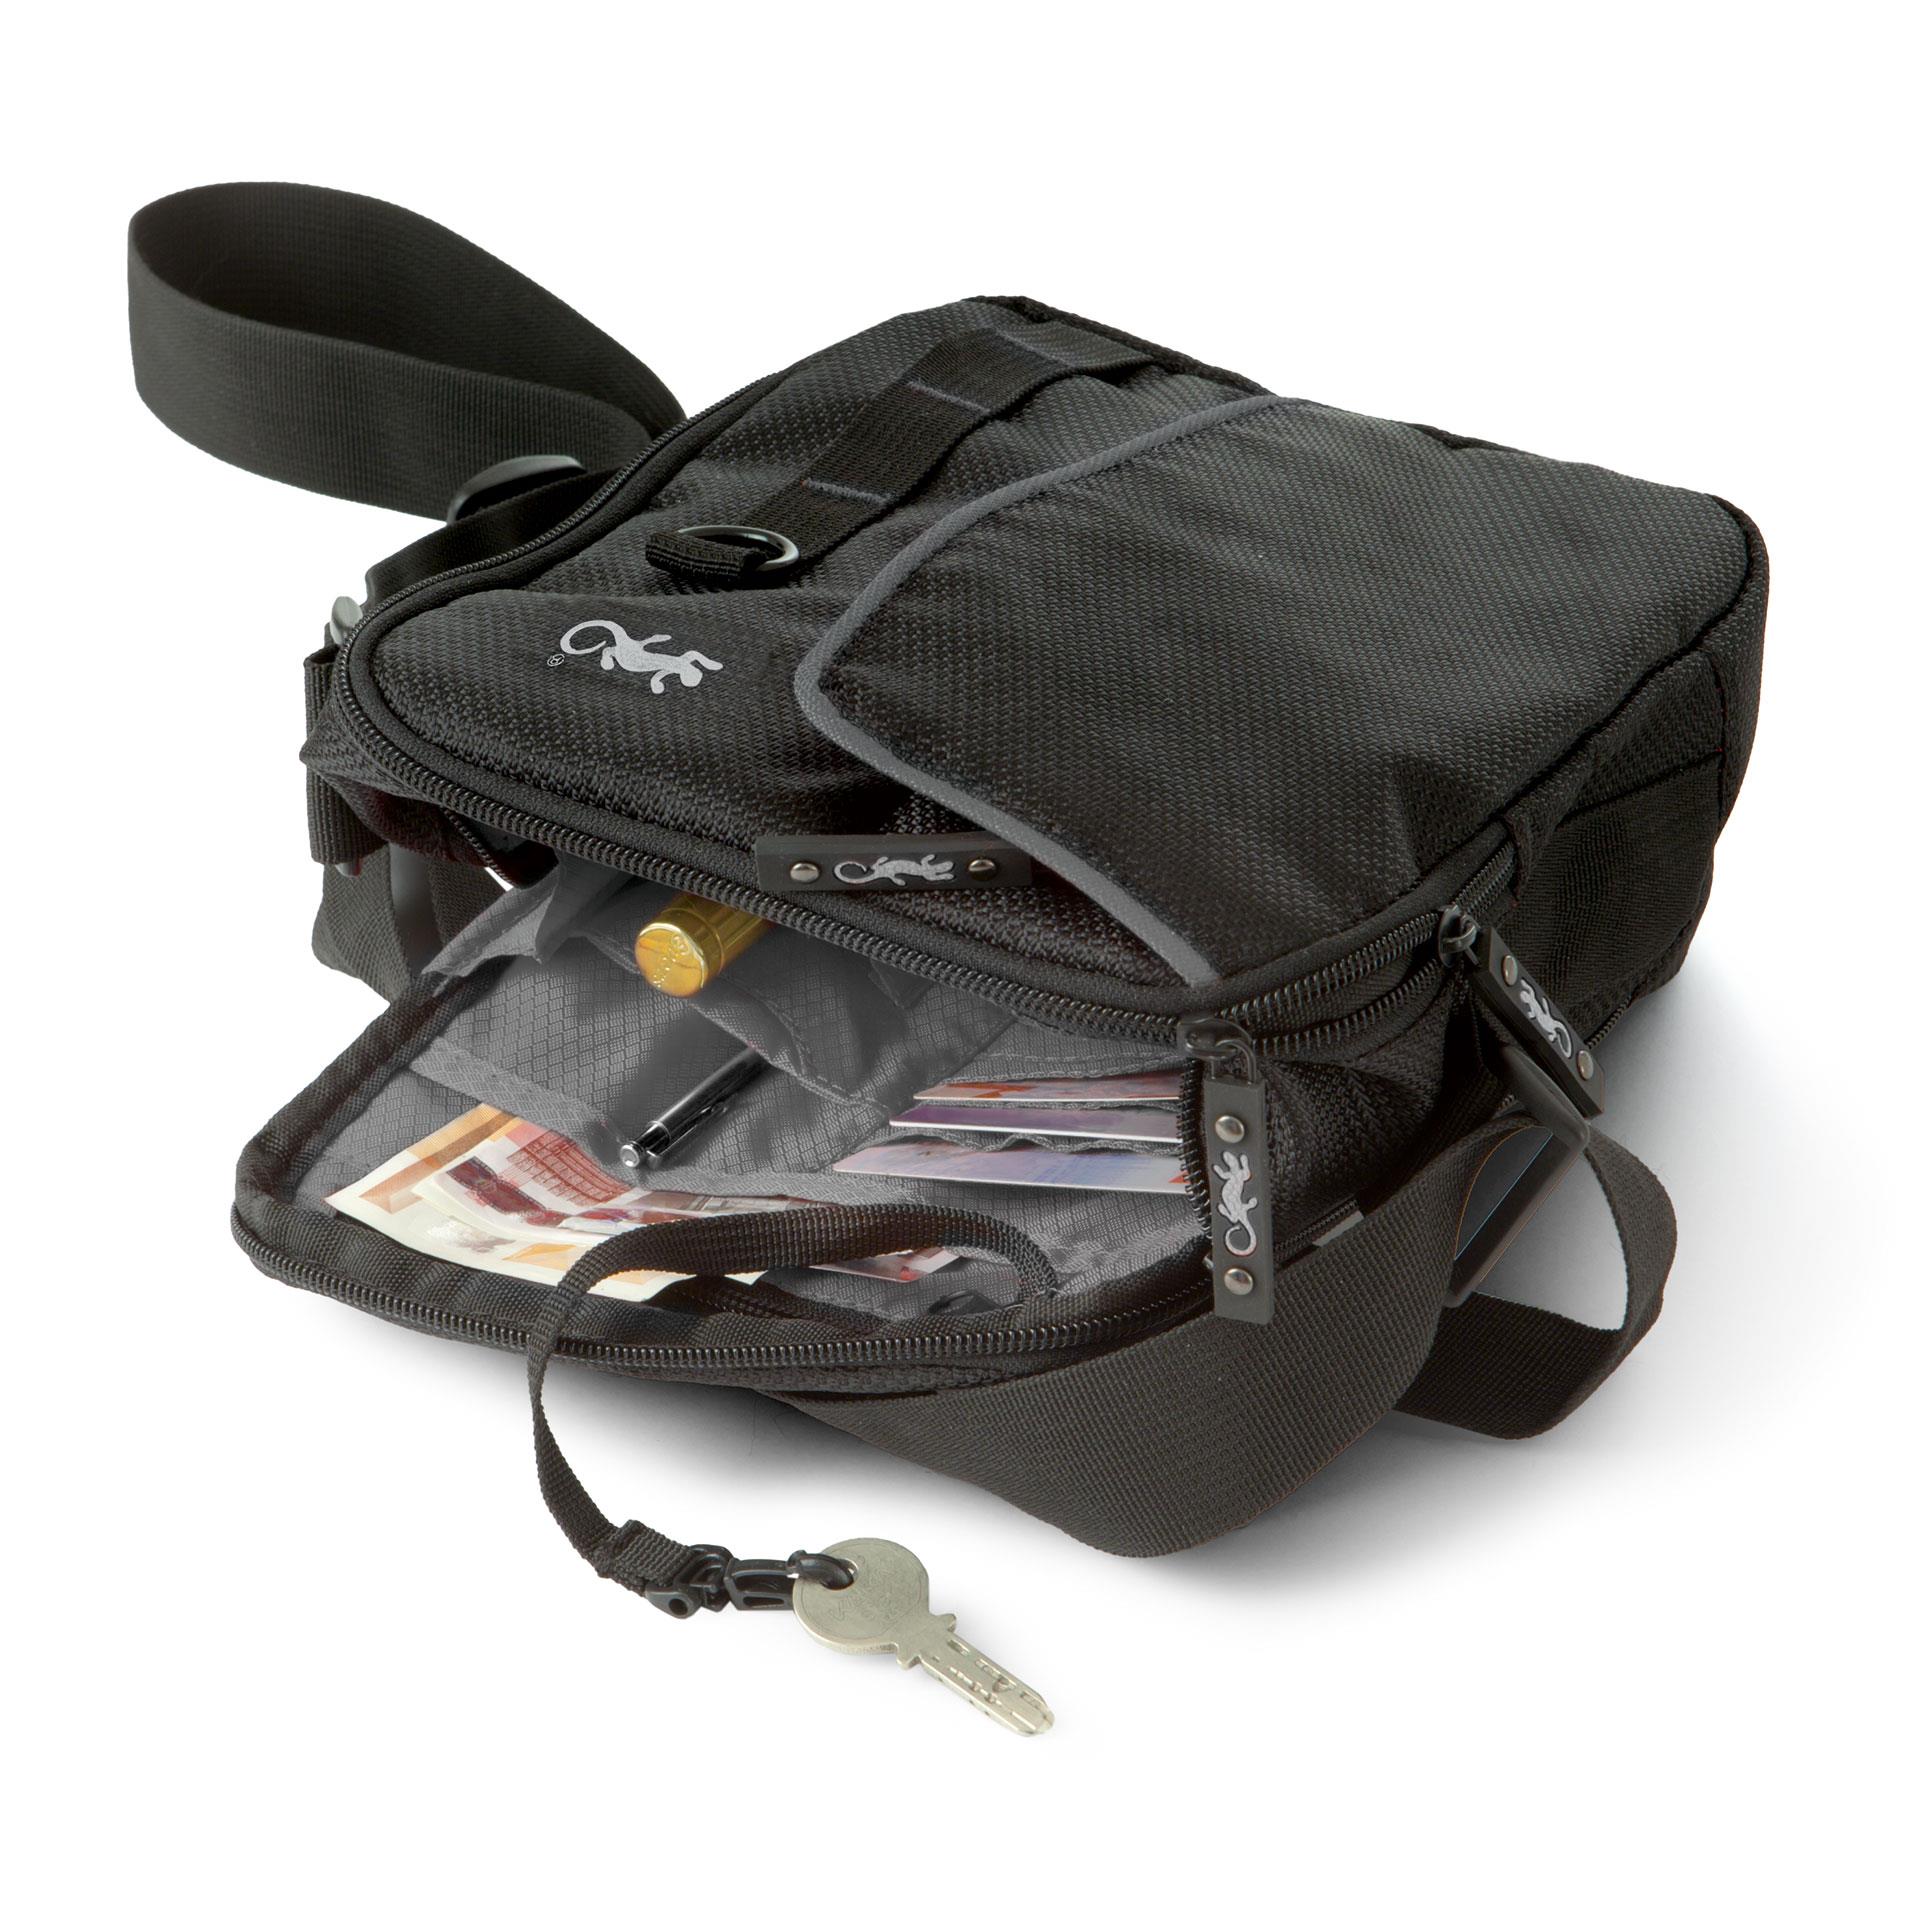 Travel Bag Compact